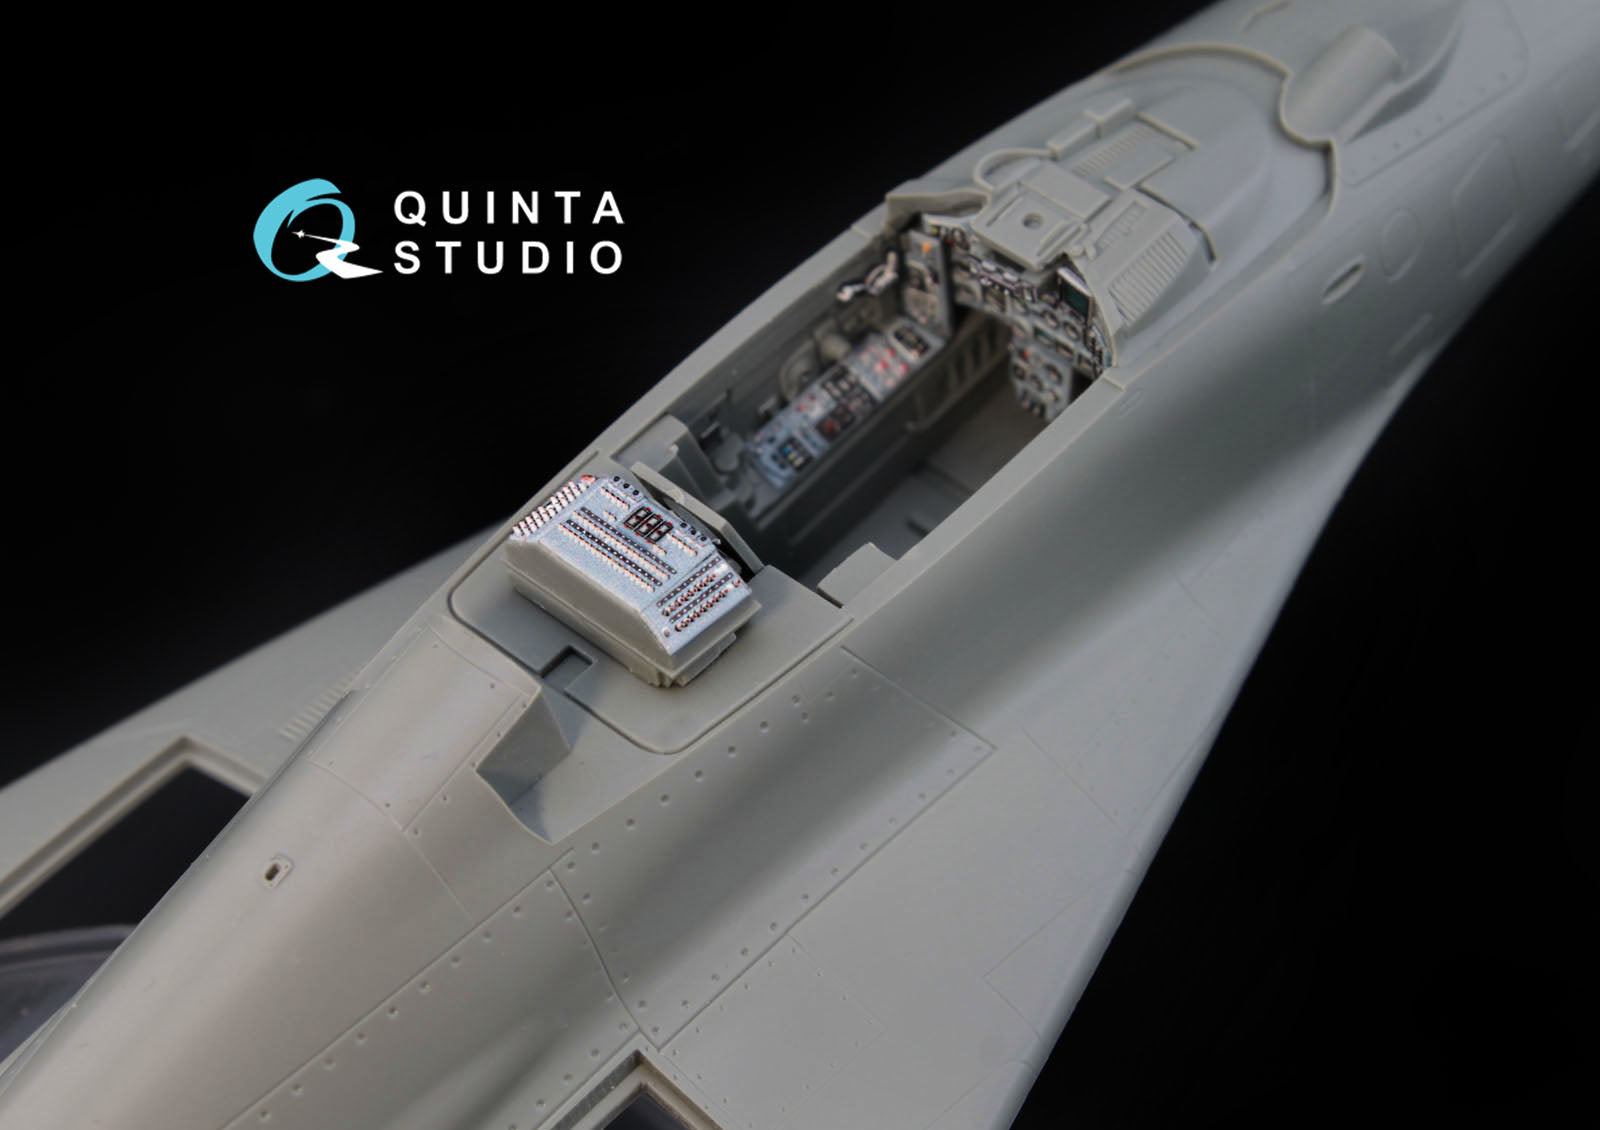 Quinta Studio - 1/48 Mig-29 (9-12) QD48008 for GWH kits